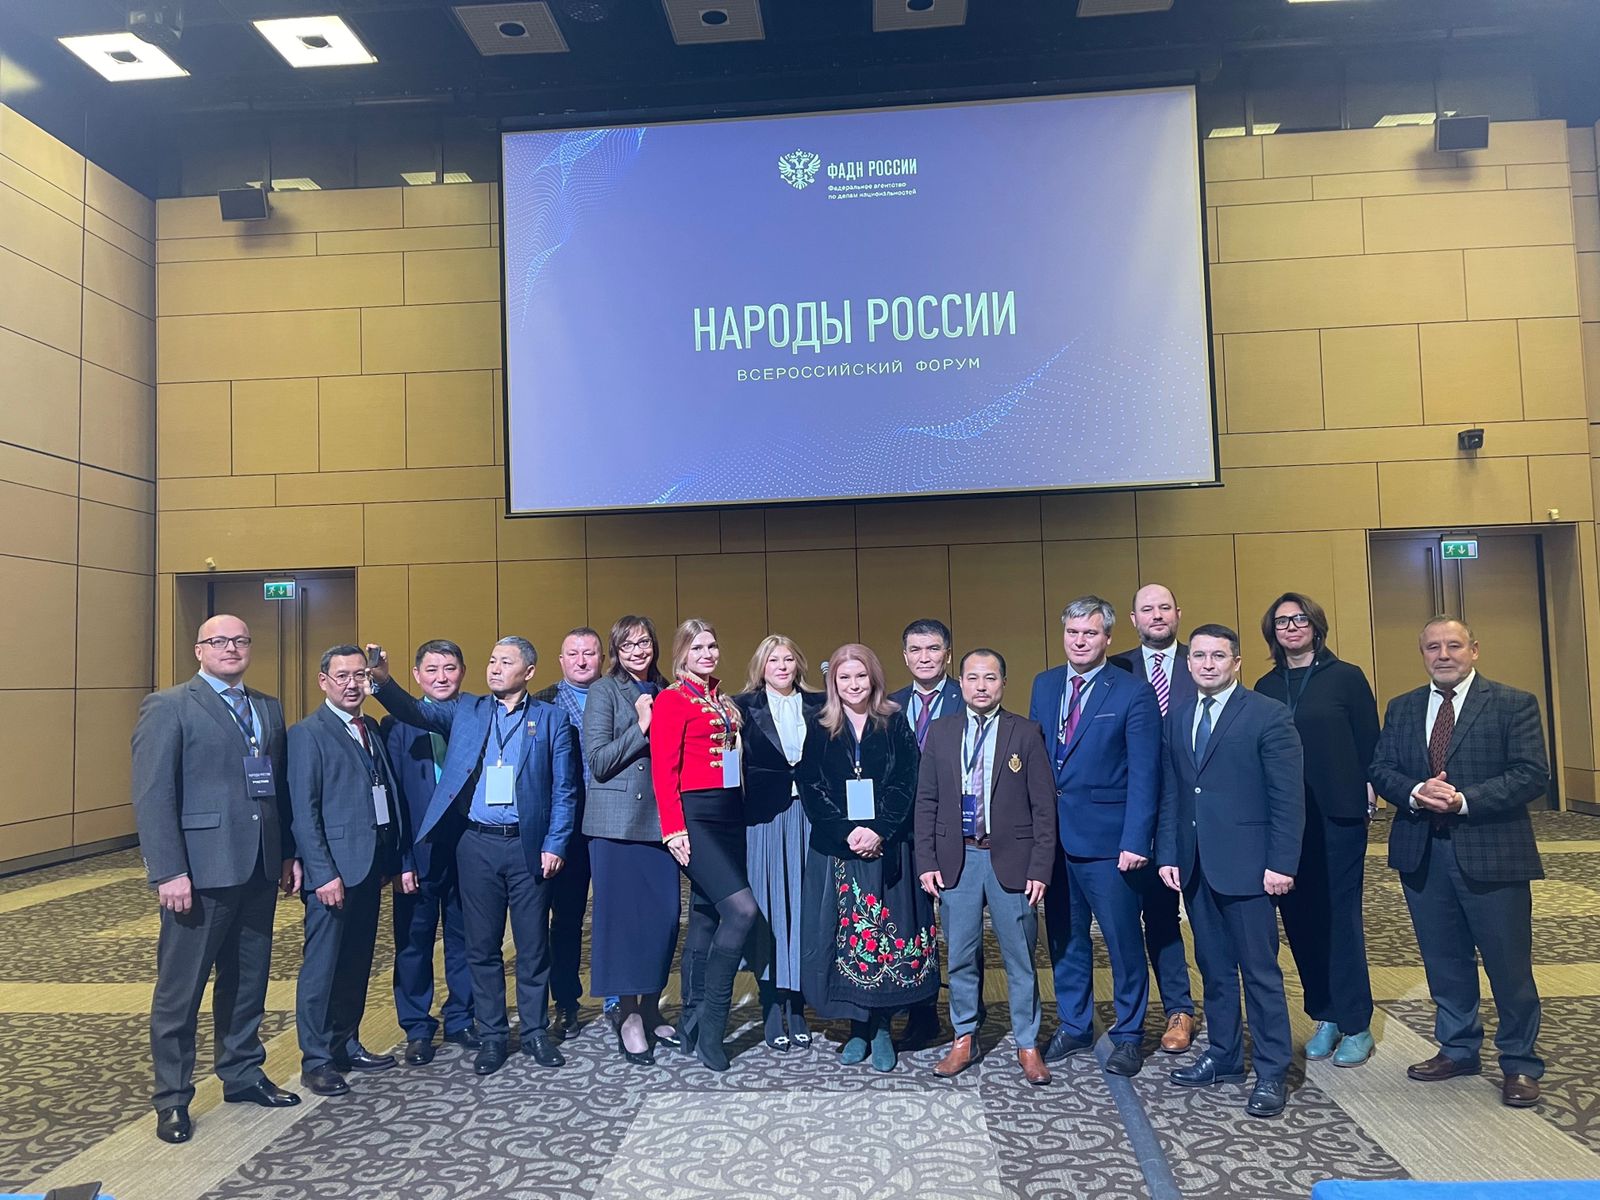 Минпромторг России принял участие во II Всероссийском форуме «Народы России»